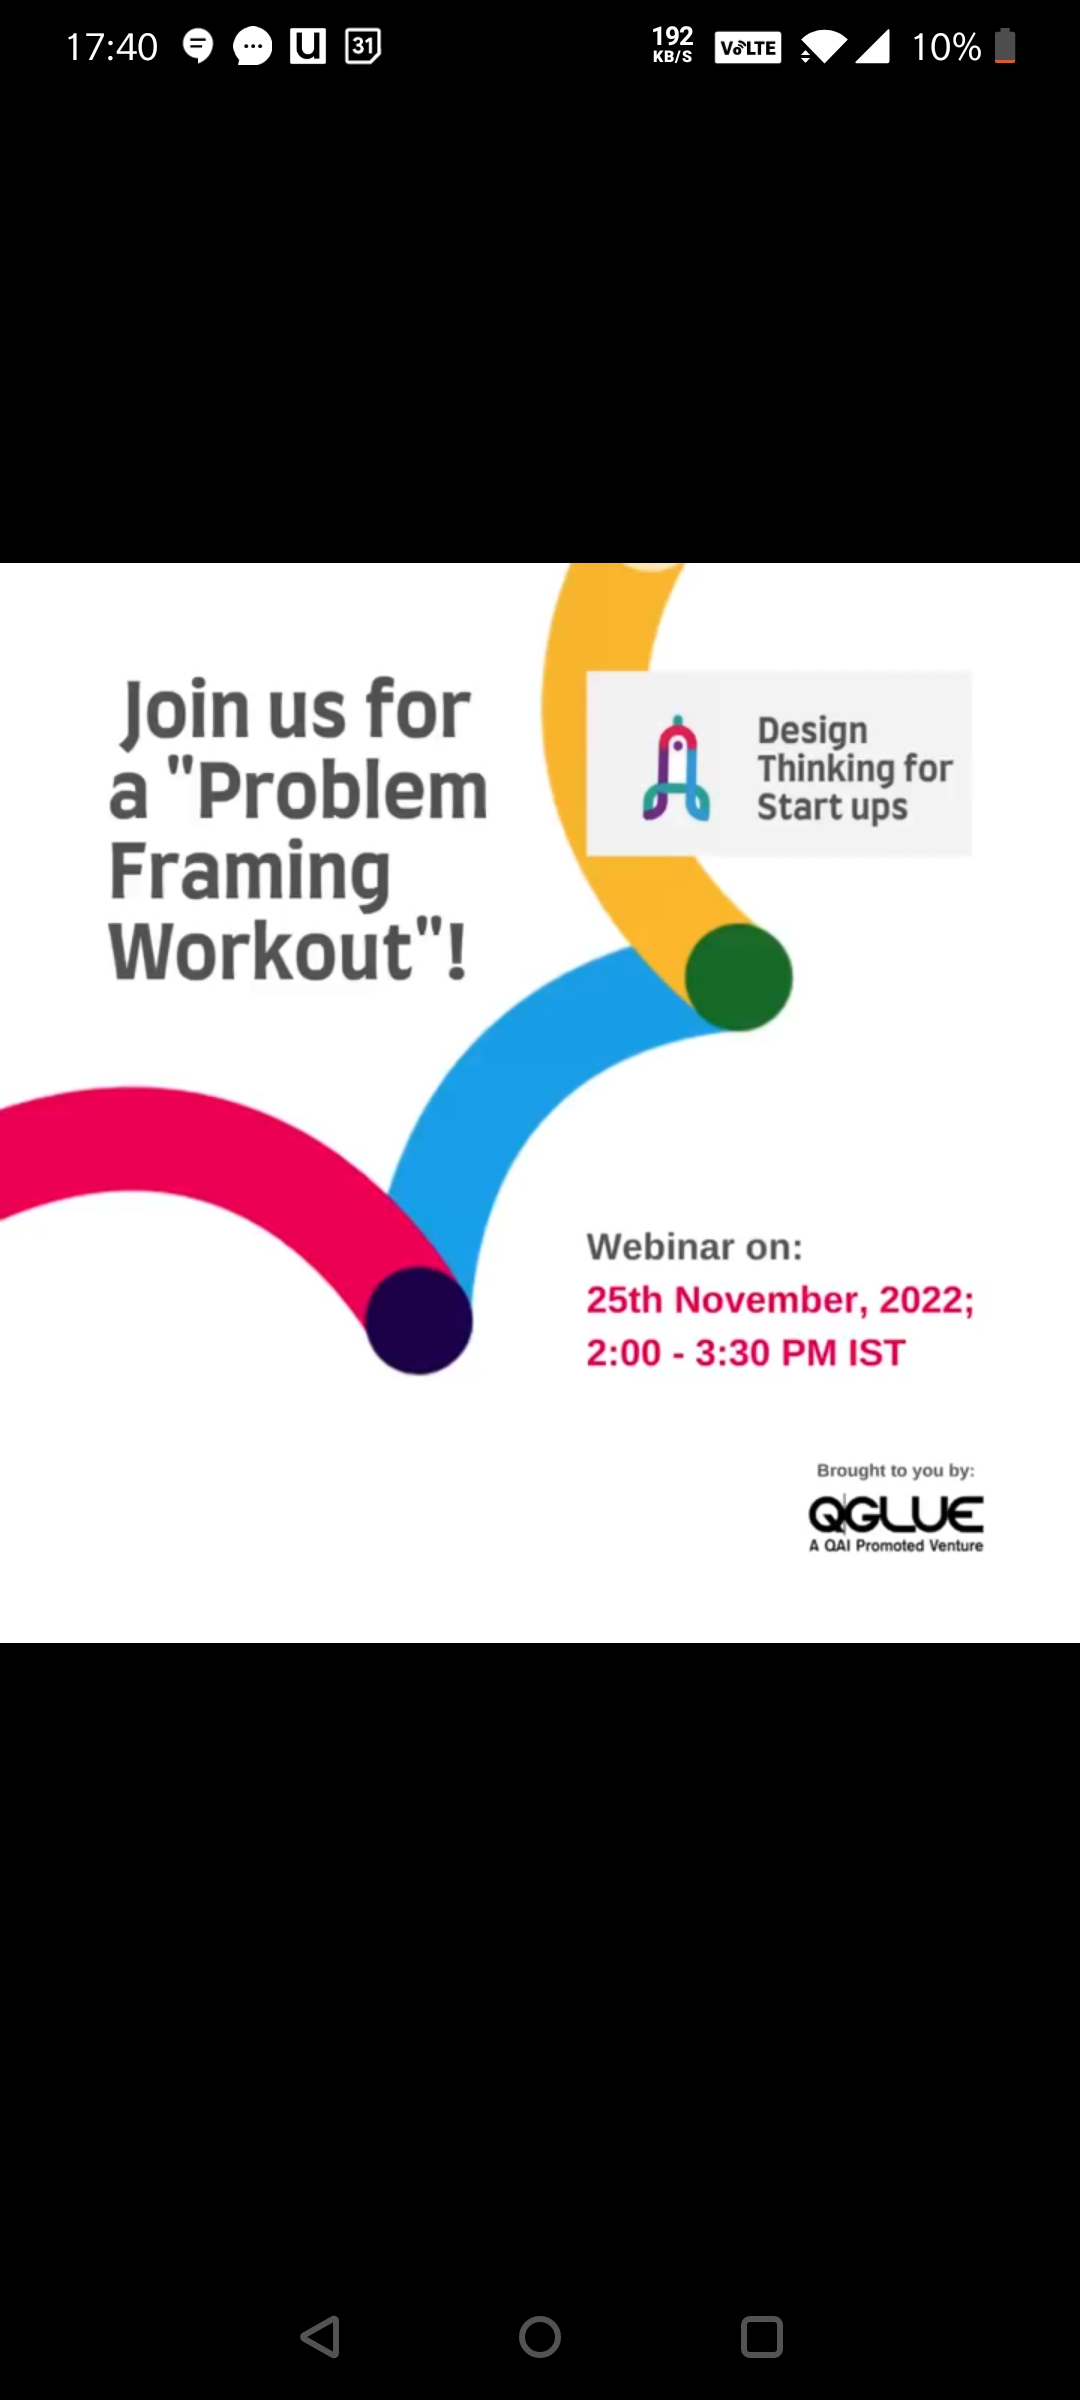 Problem Framing Workout for Start-ups., Online Event